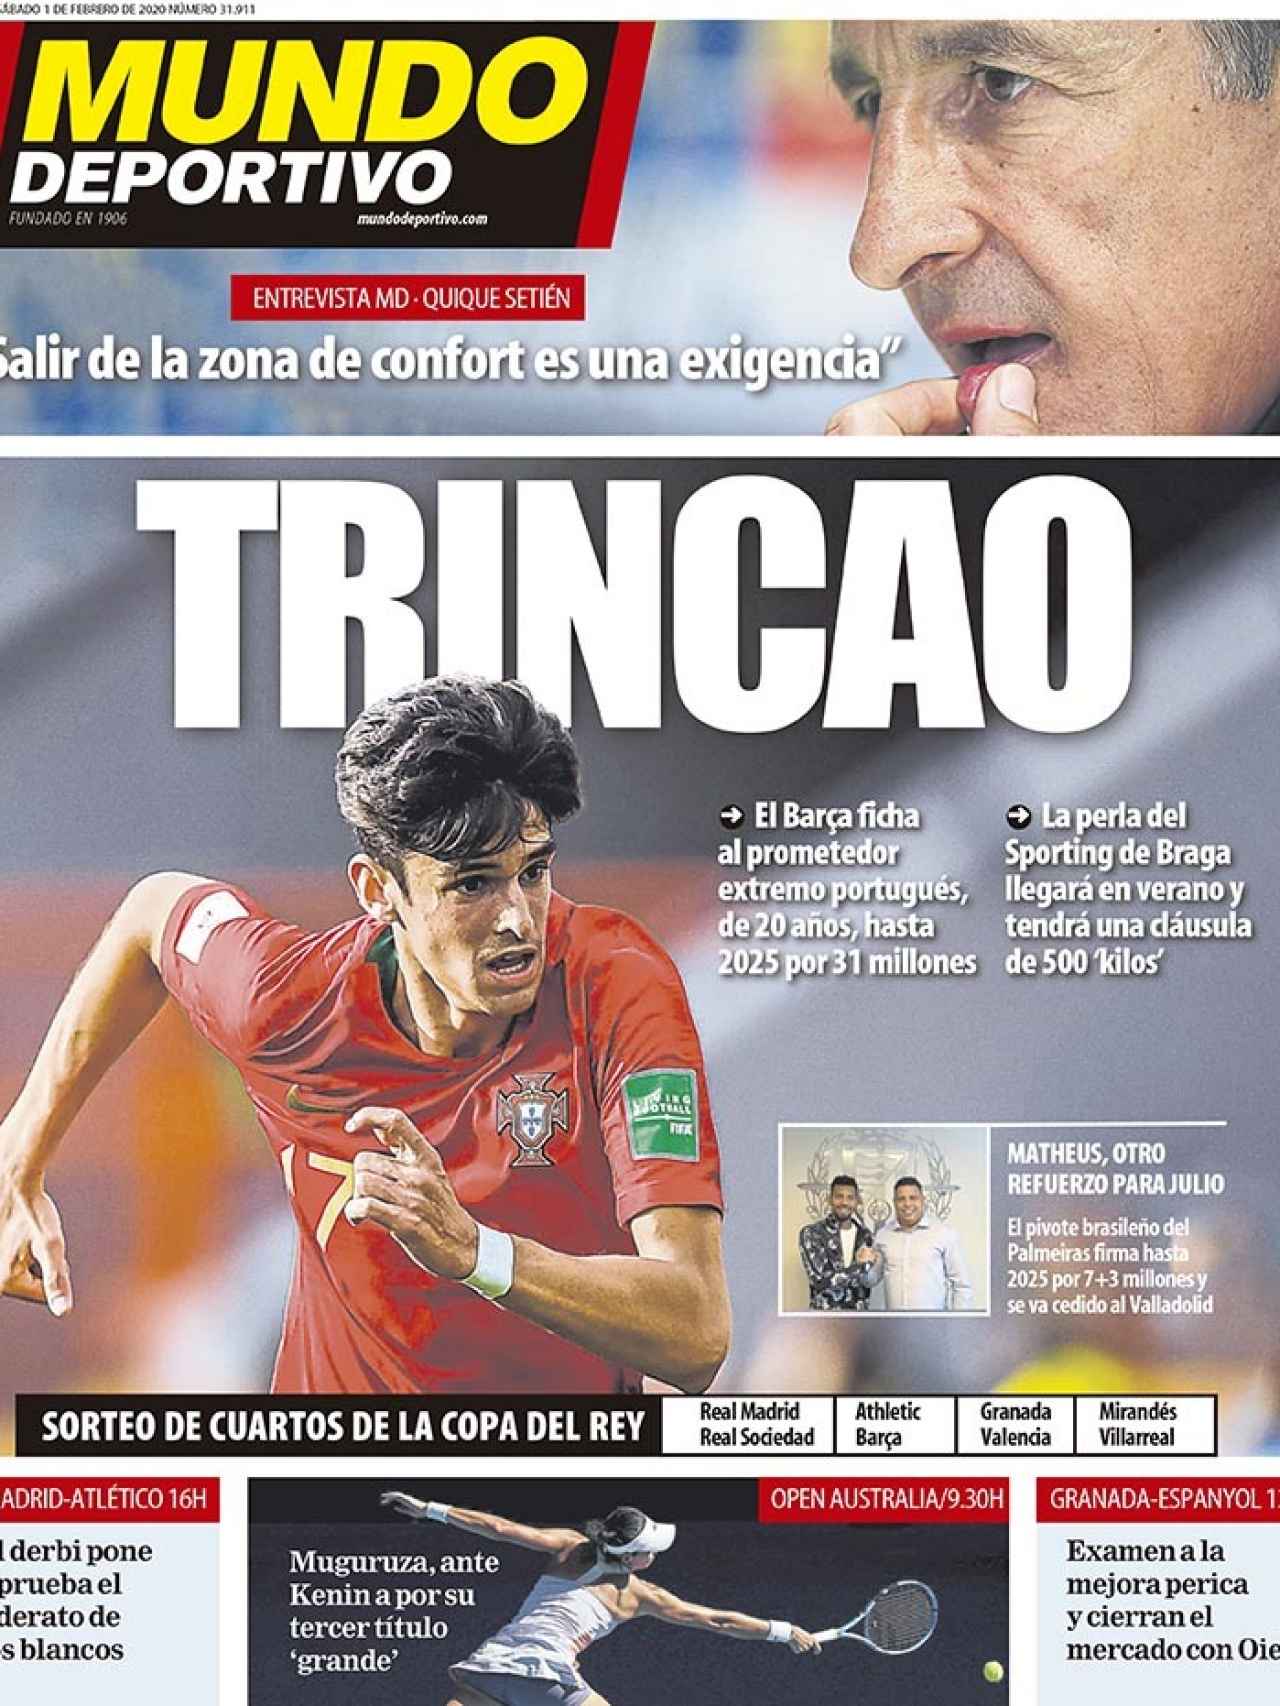 La portada del diario Mundo Deportivo (01/02/2020)